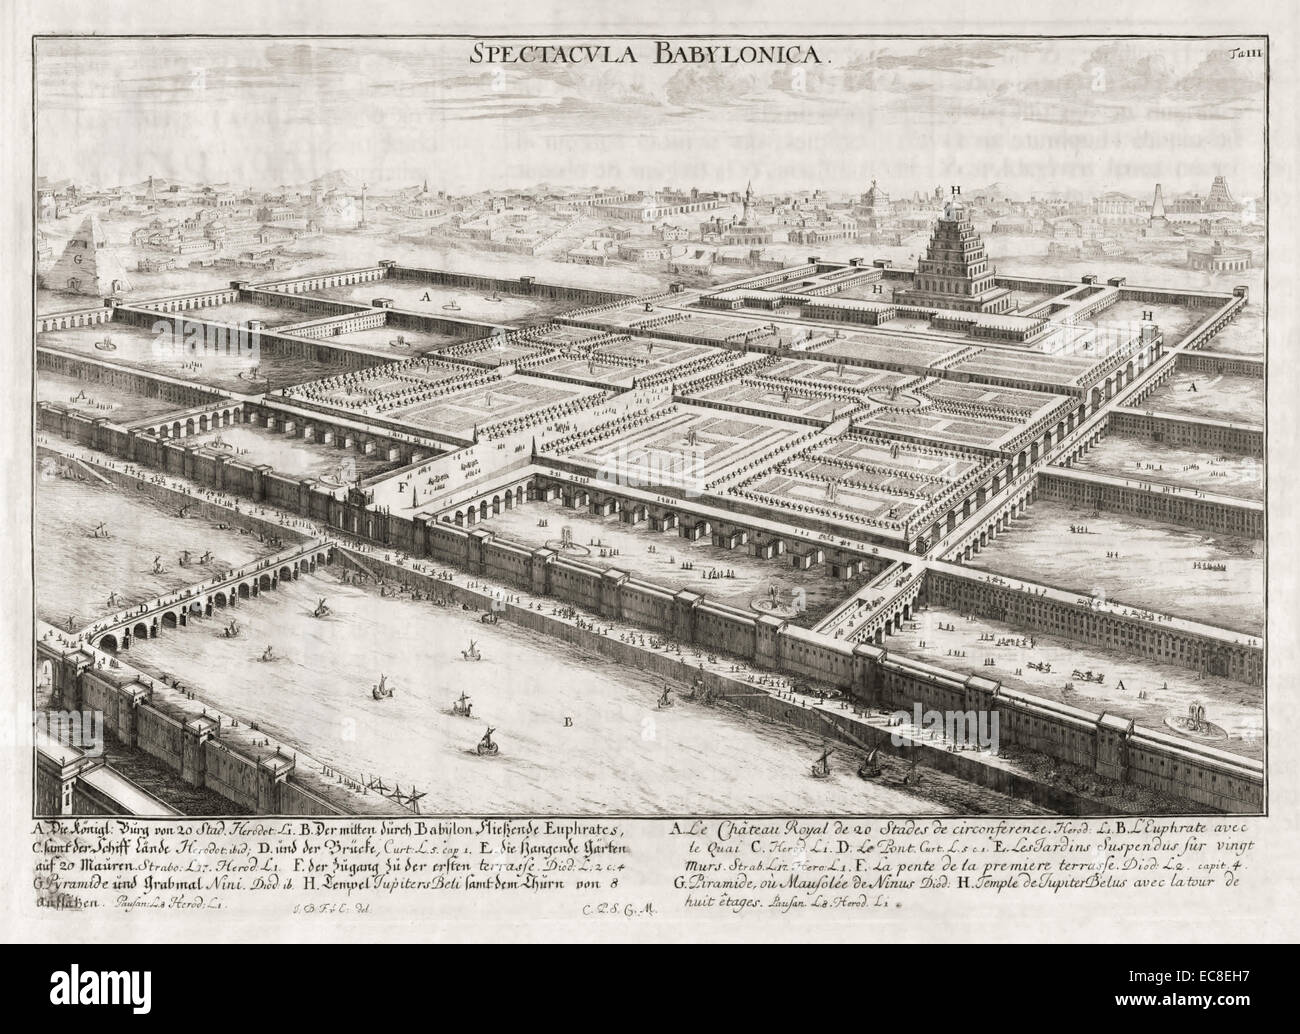 Hängenden Gärten von Babylon, eines der sieben Weltwunder der Antike. Siehe Beschreibung für mehr Informationen. Stockfoto